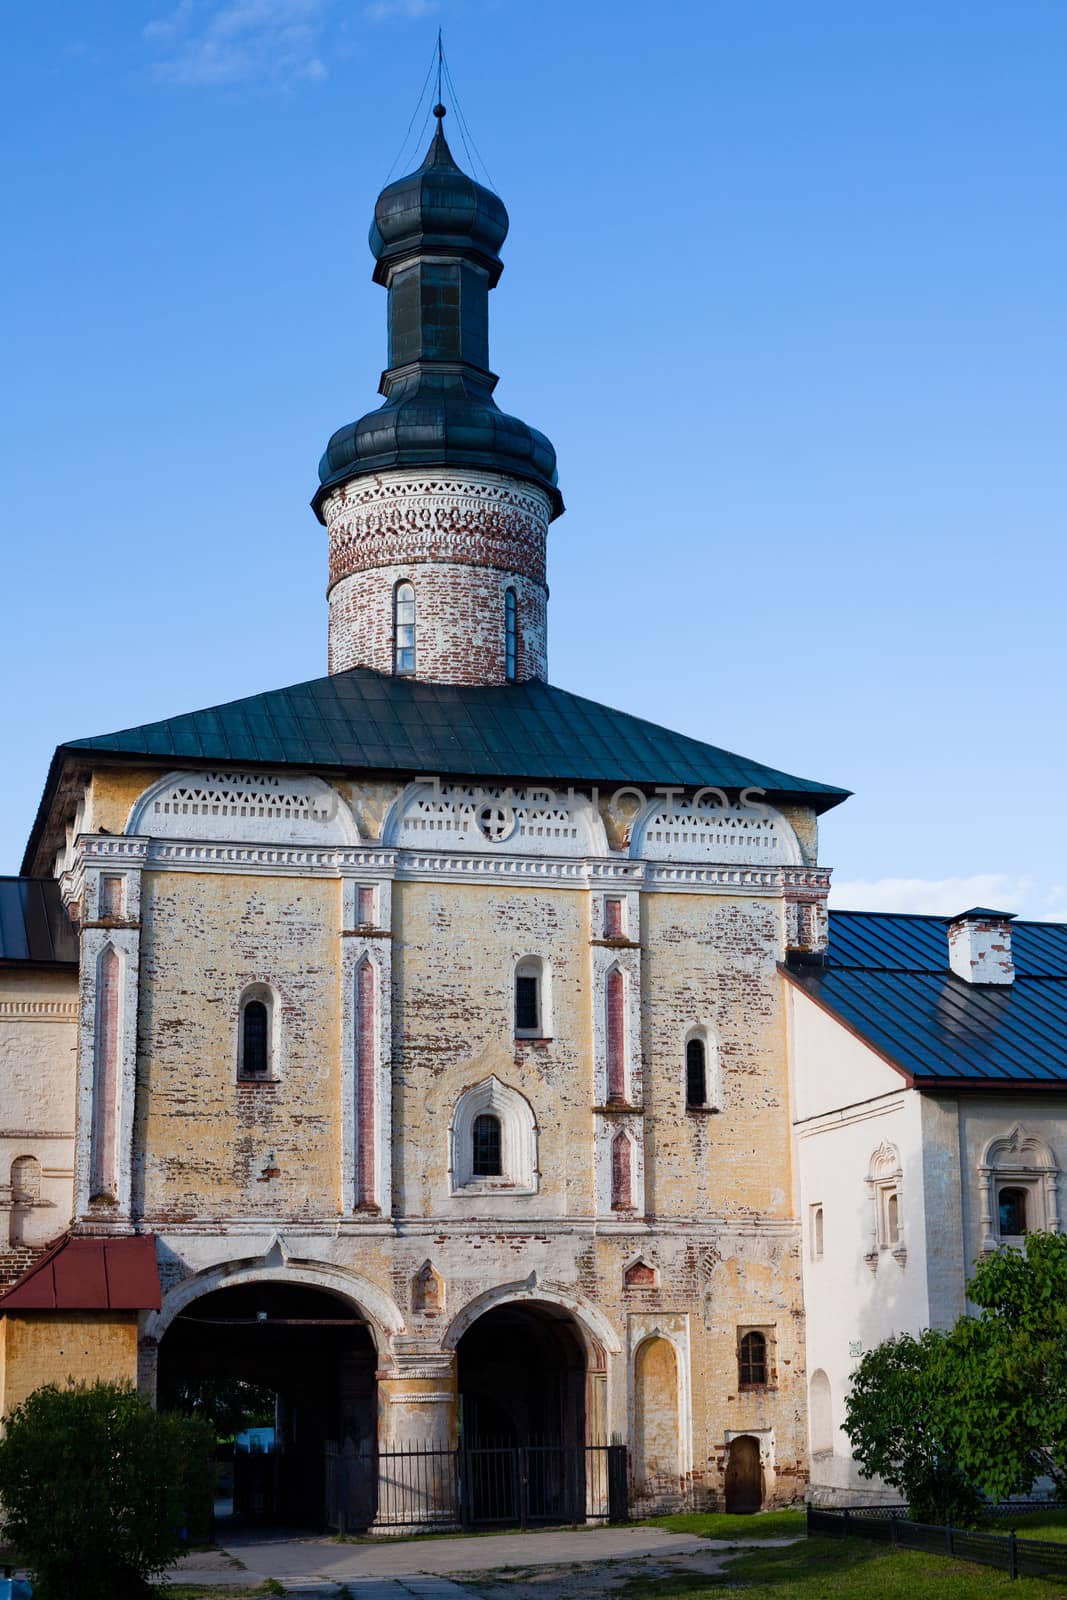 An old white church in Kirillov abbey

